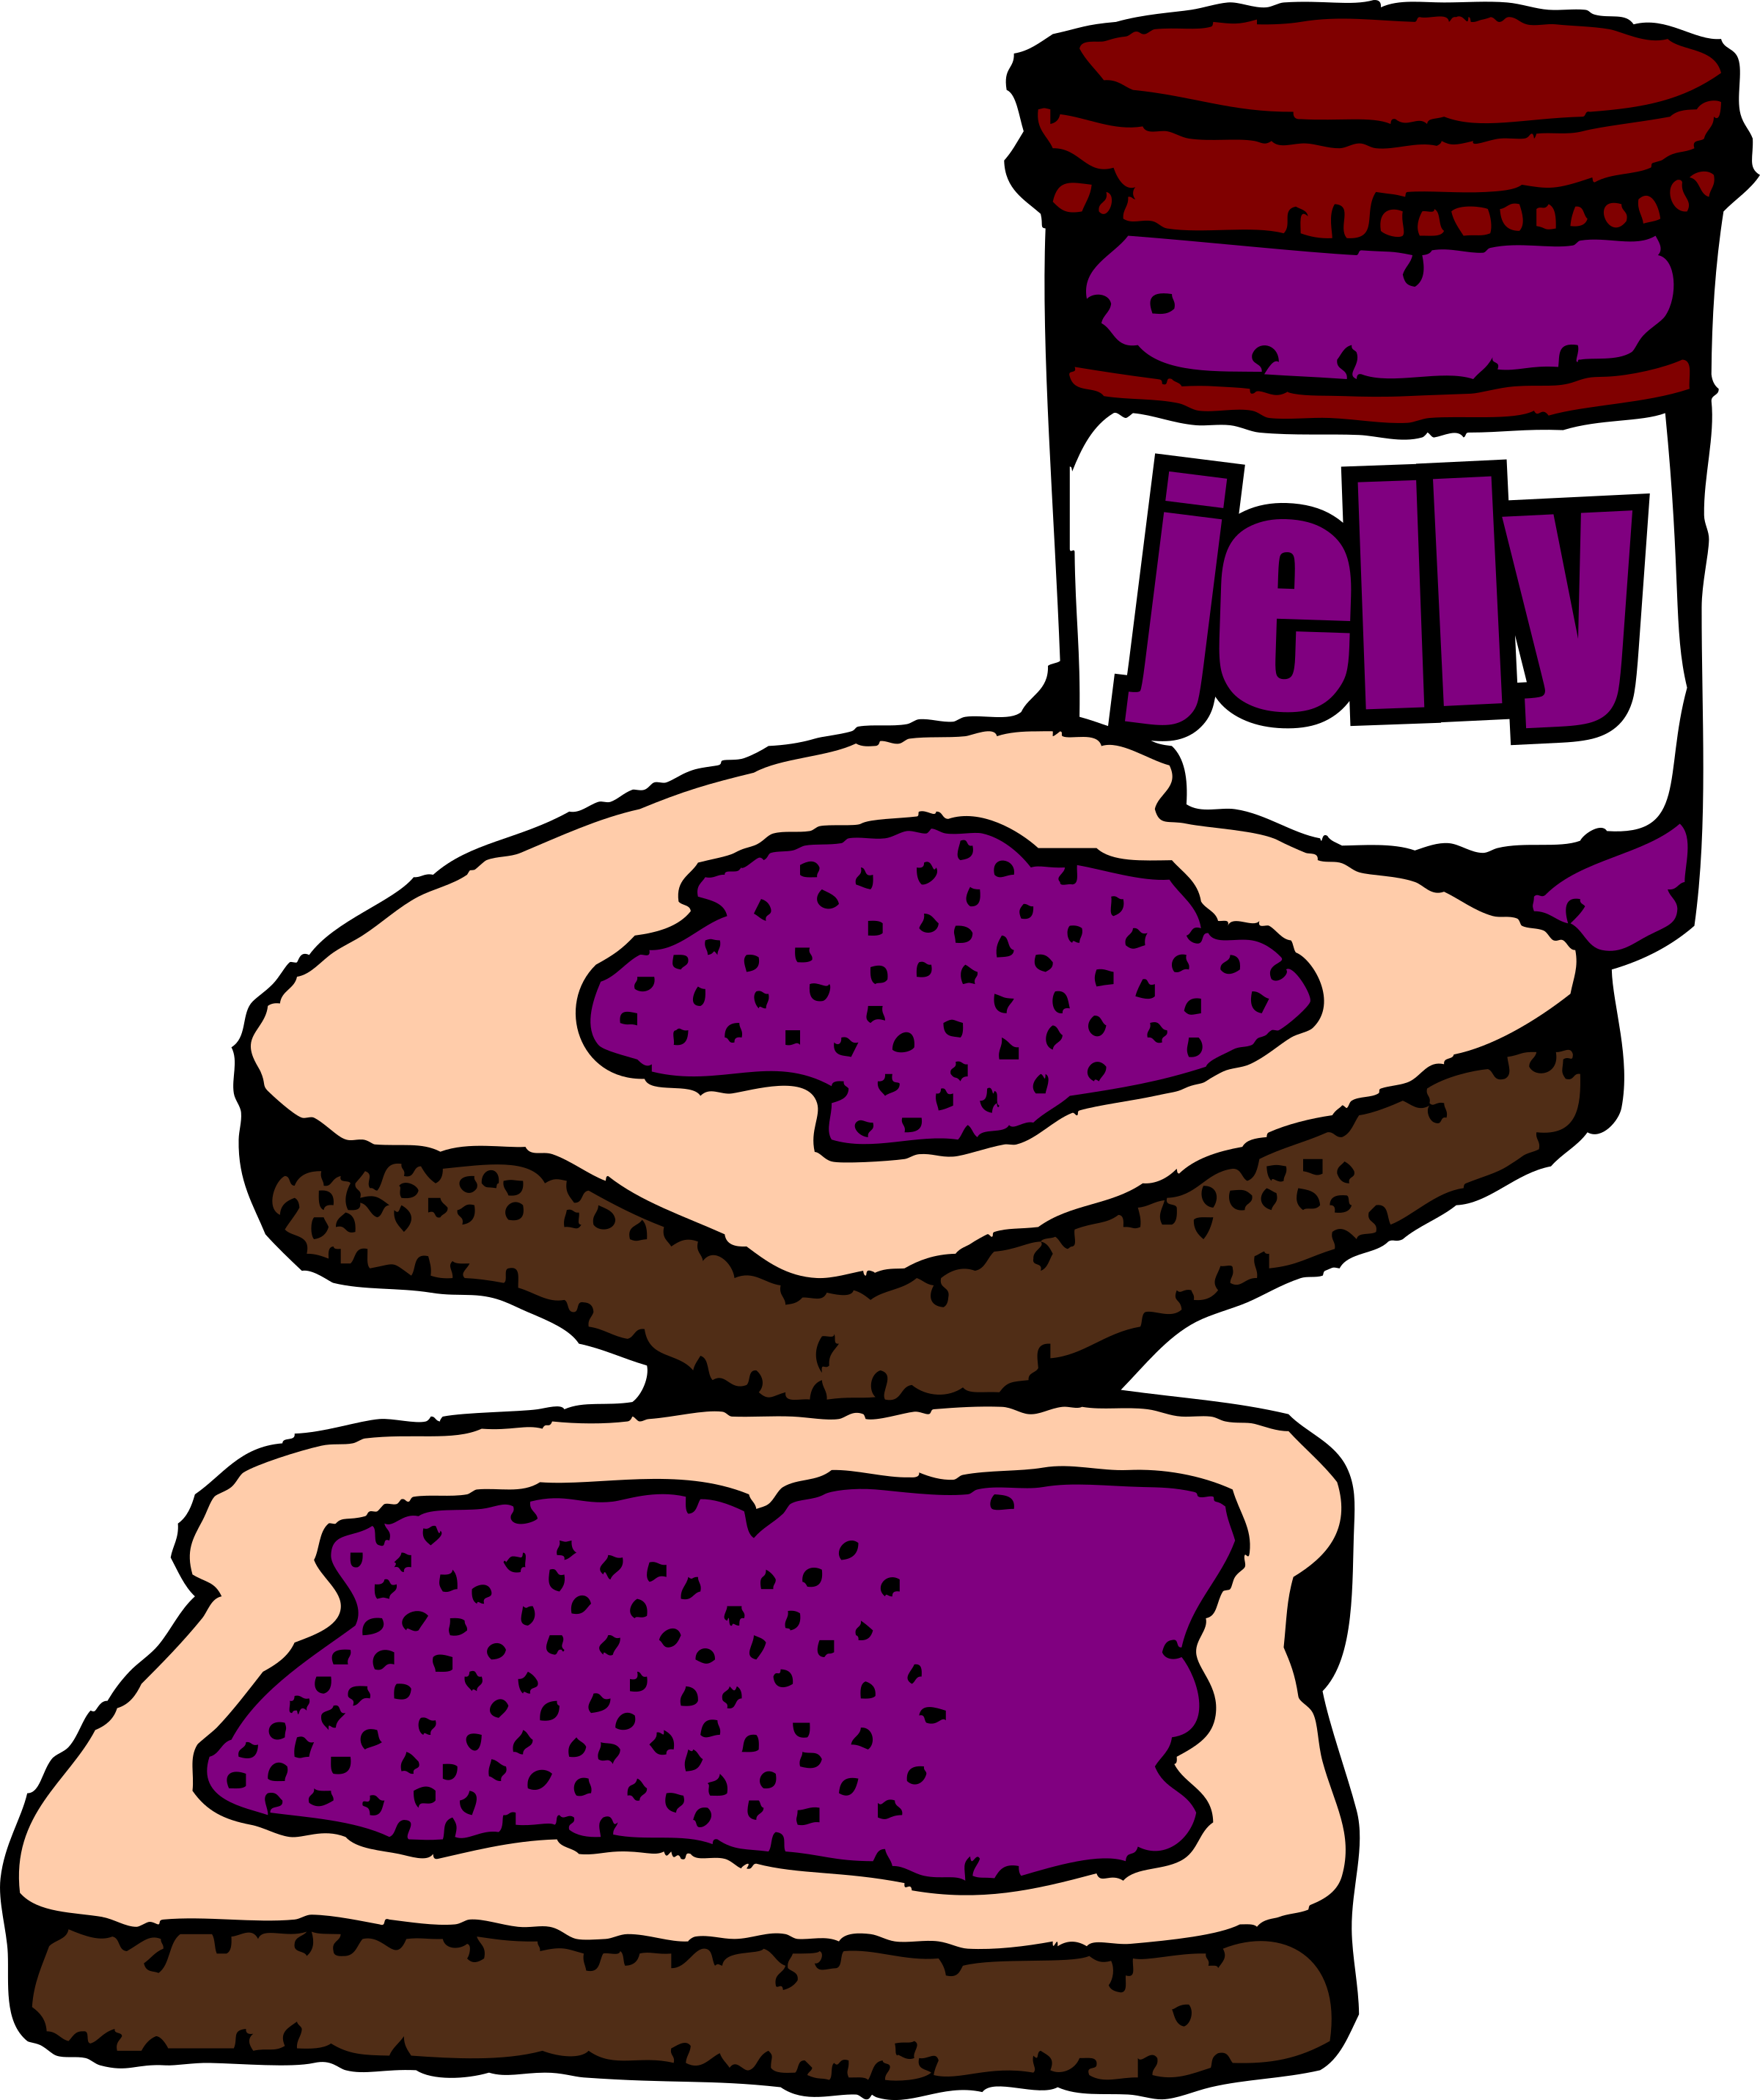 Peanut Butter Jelly Sandwich